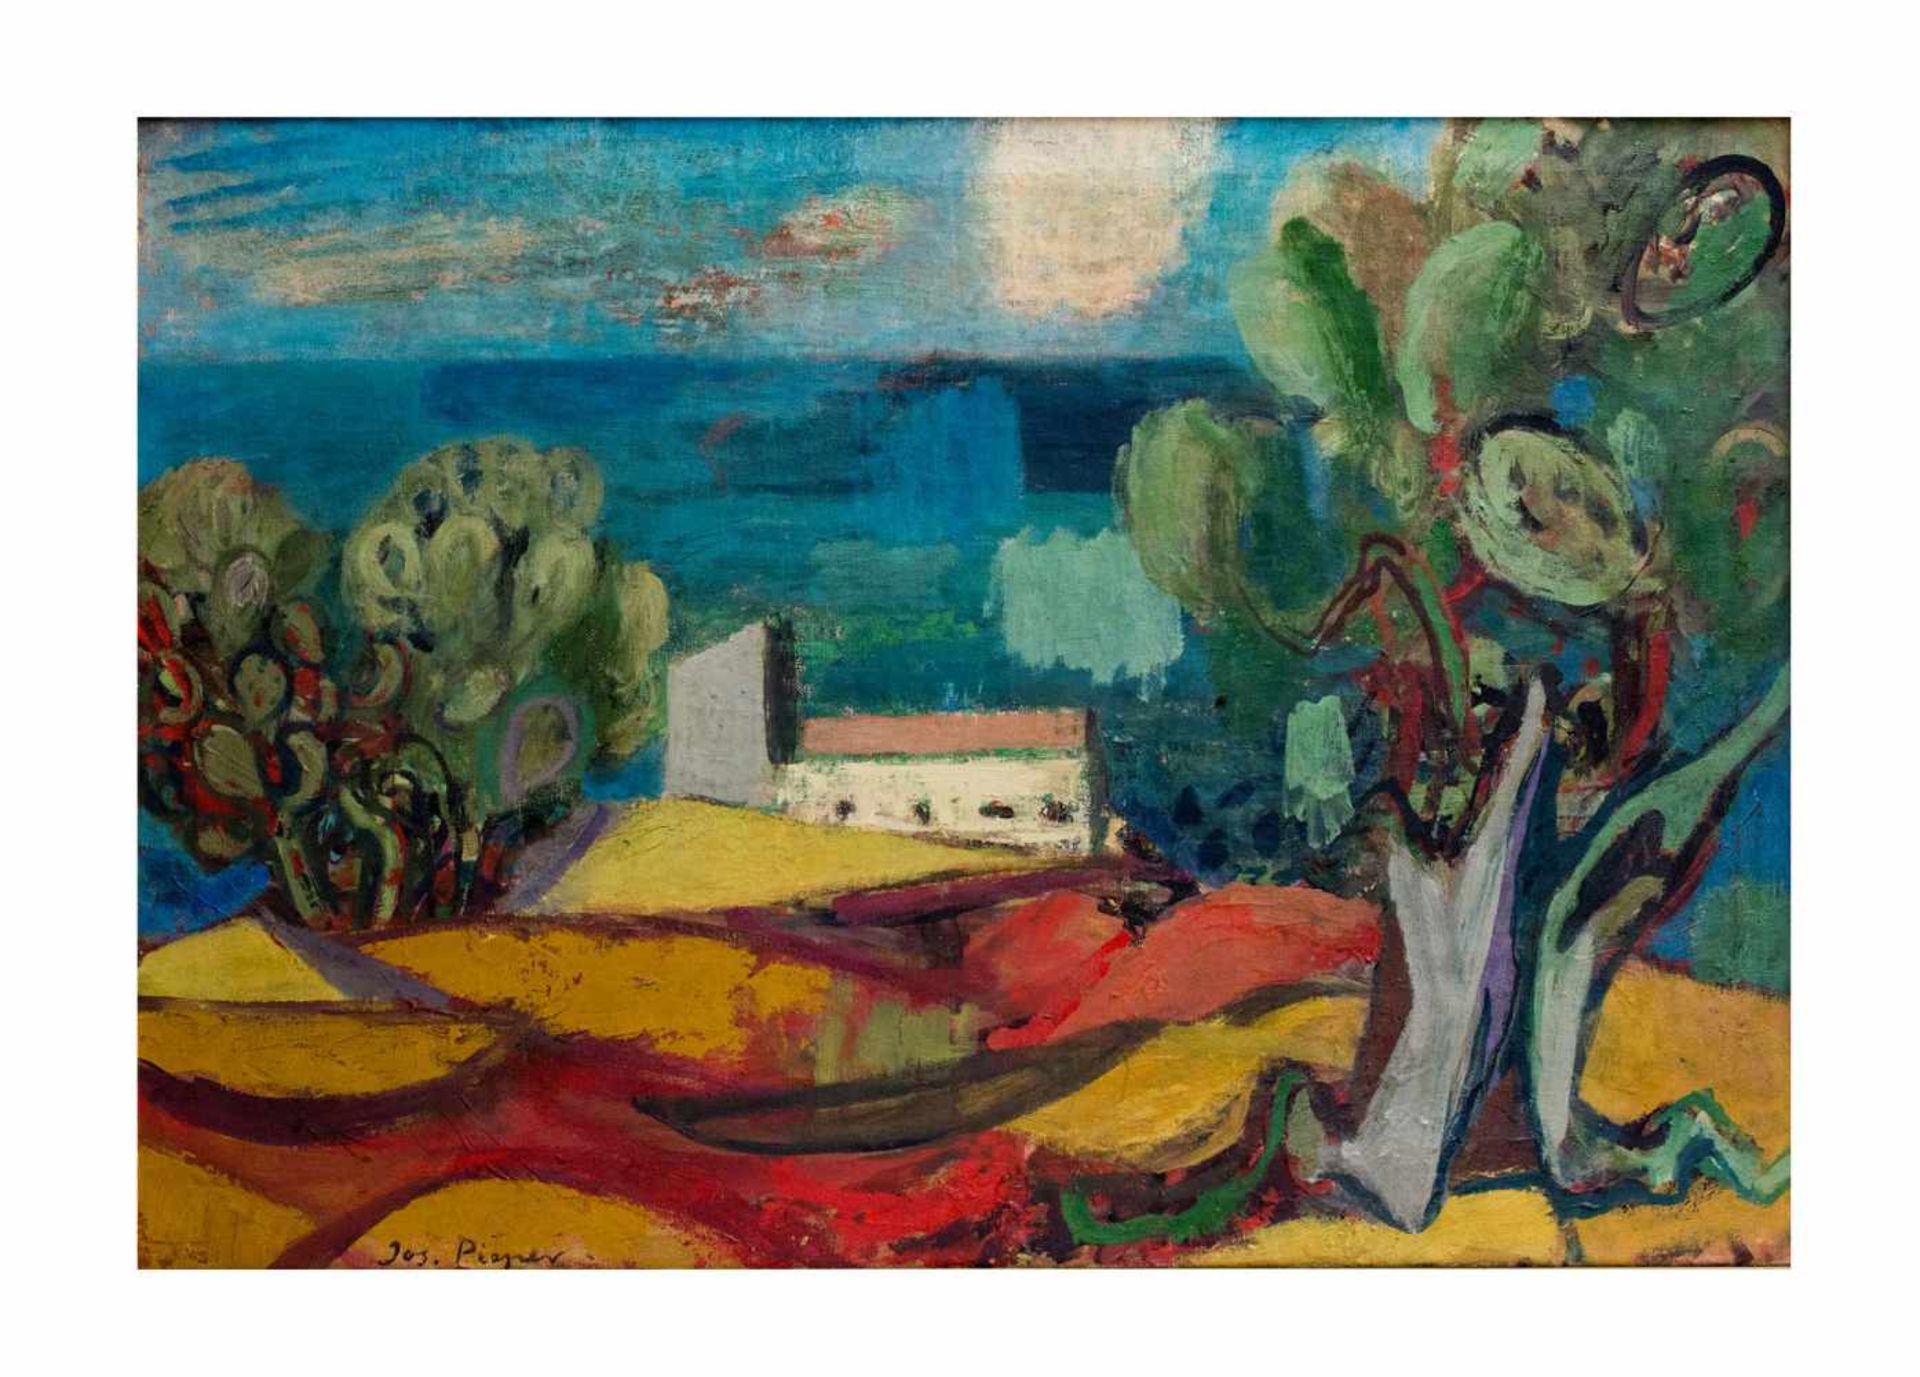 Josef Pieper (1907 Bochum - 1977 Düsseldorf) Südliche Landschaft, Öl auf Leinwand, 70 cm x 100 cm,